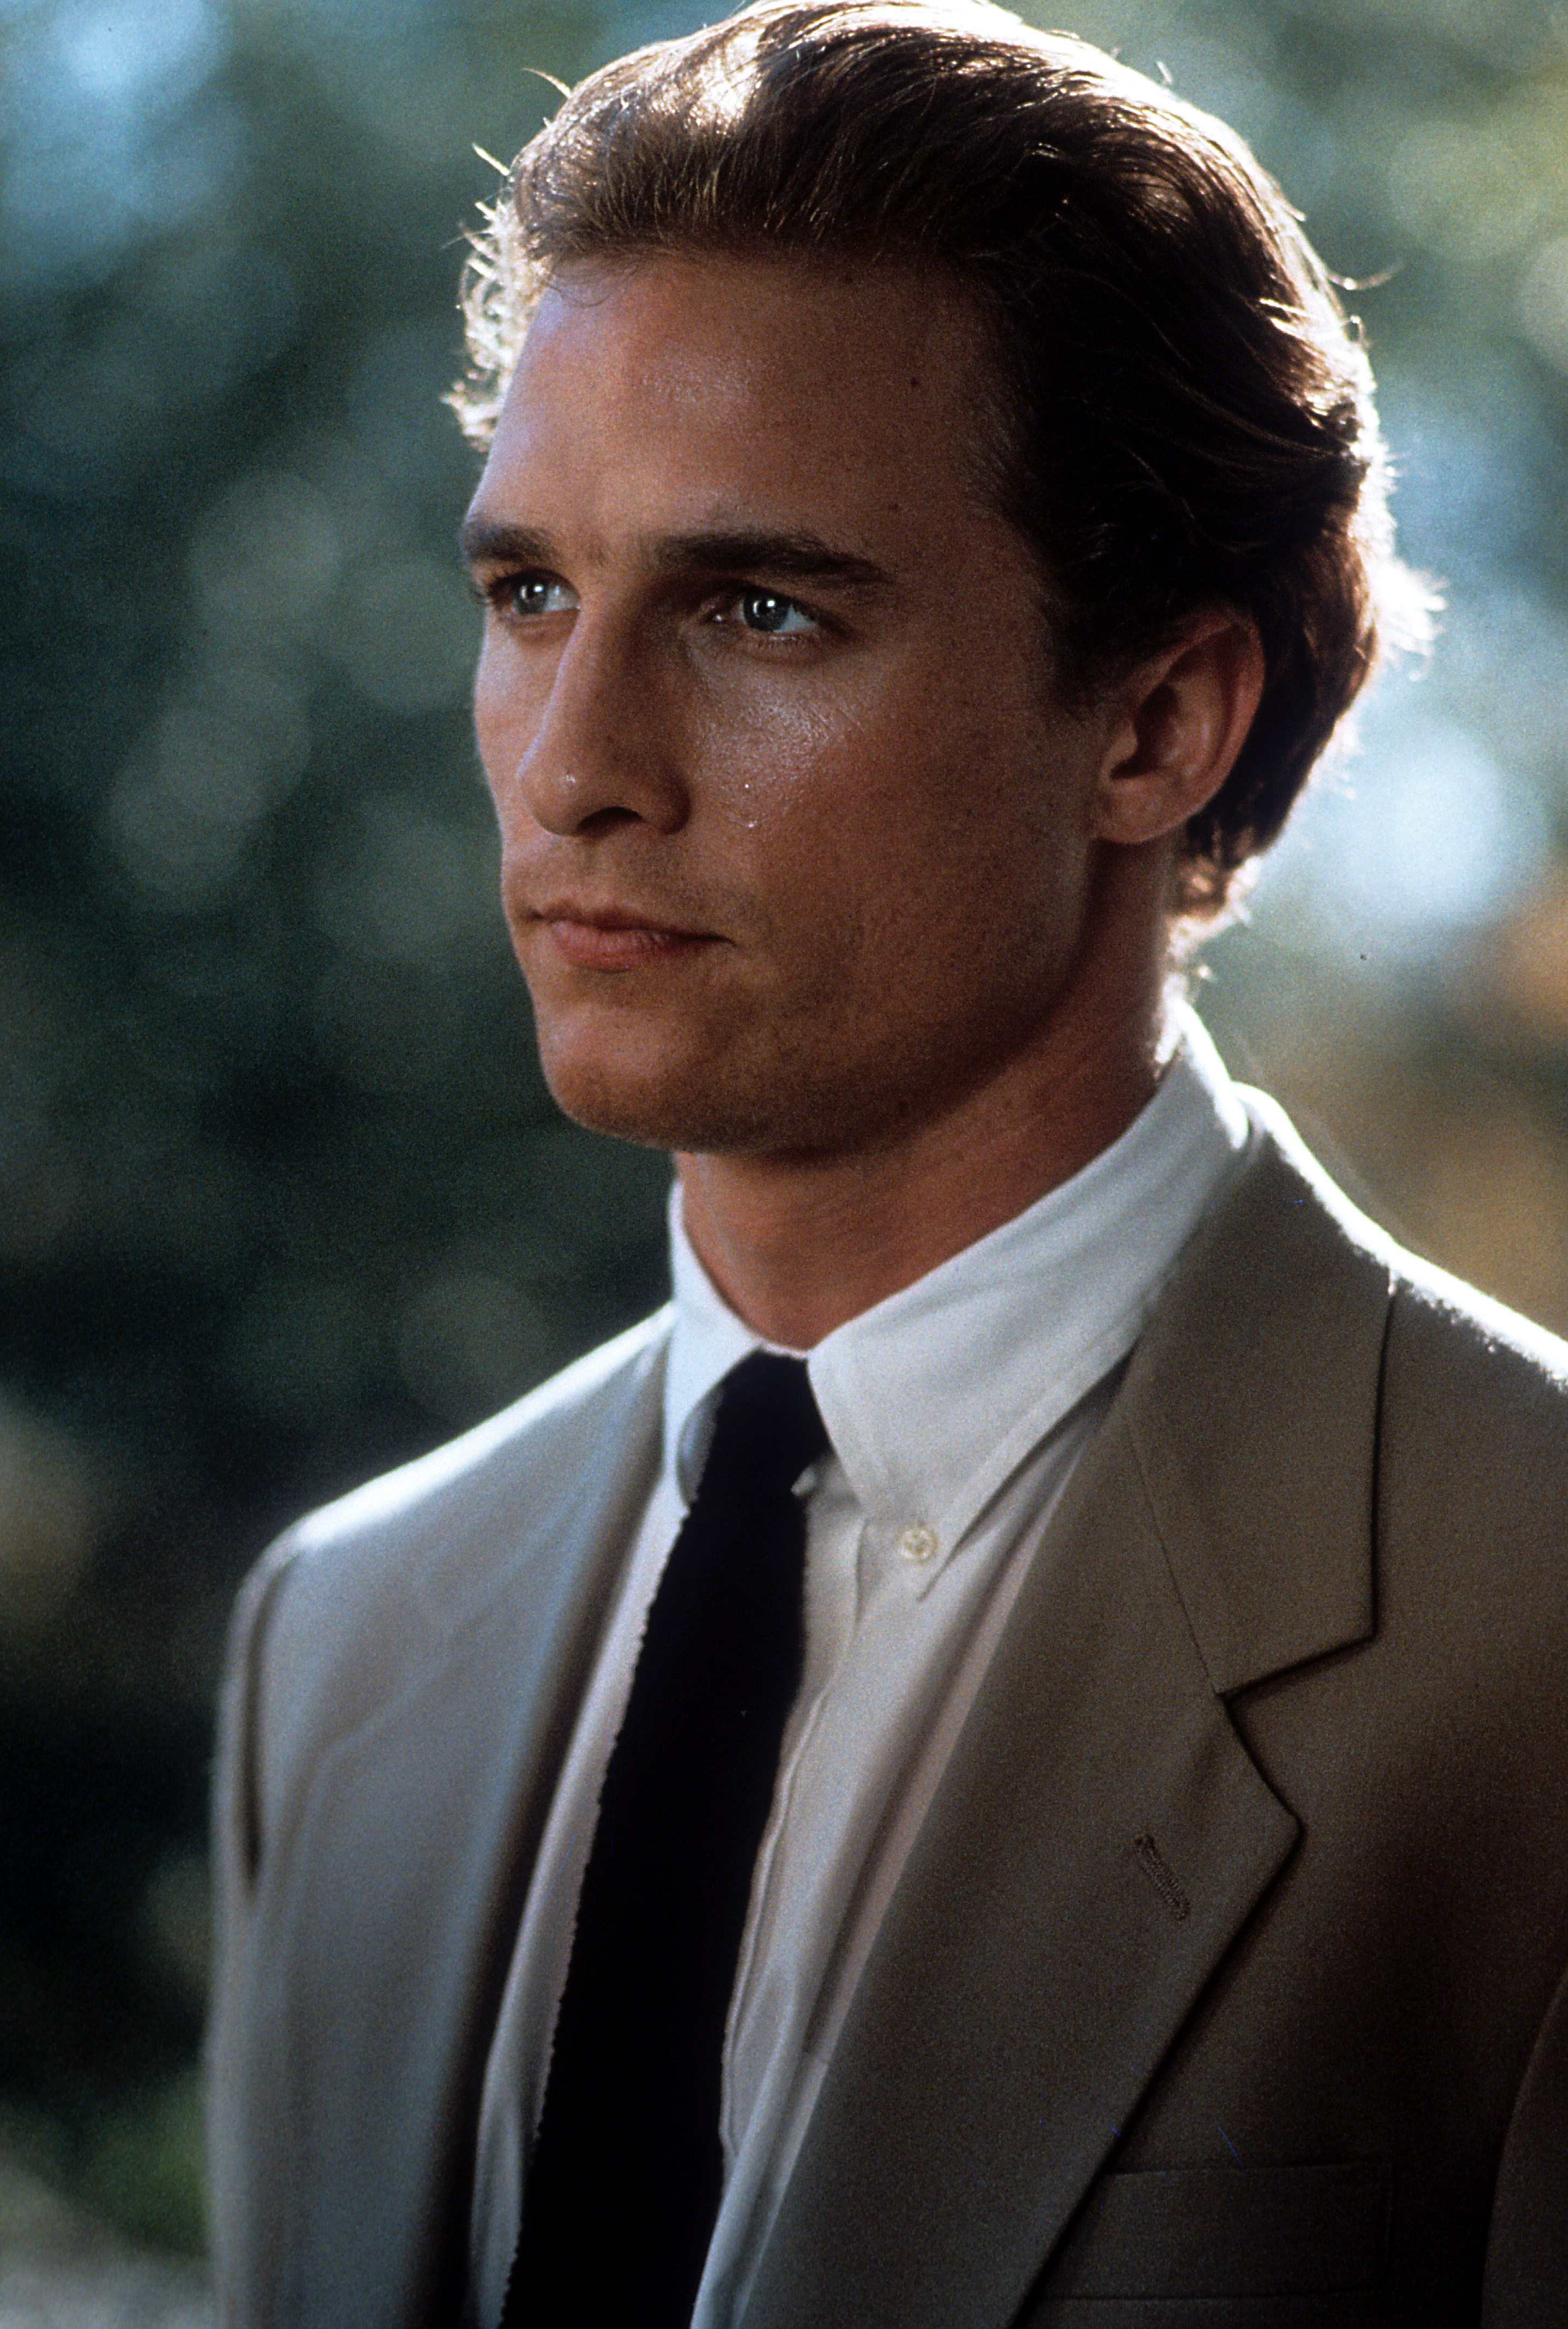 Un acteur américain dans une scène du film "Le droit de tuer ?" en 1996 | Source : Getty Images